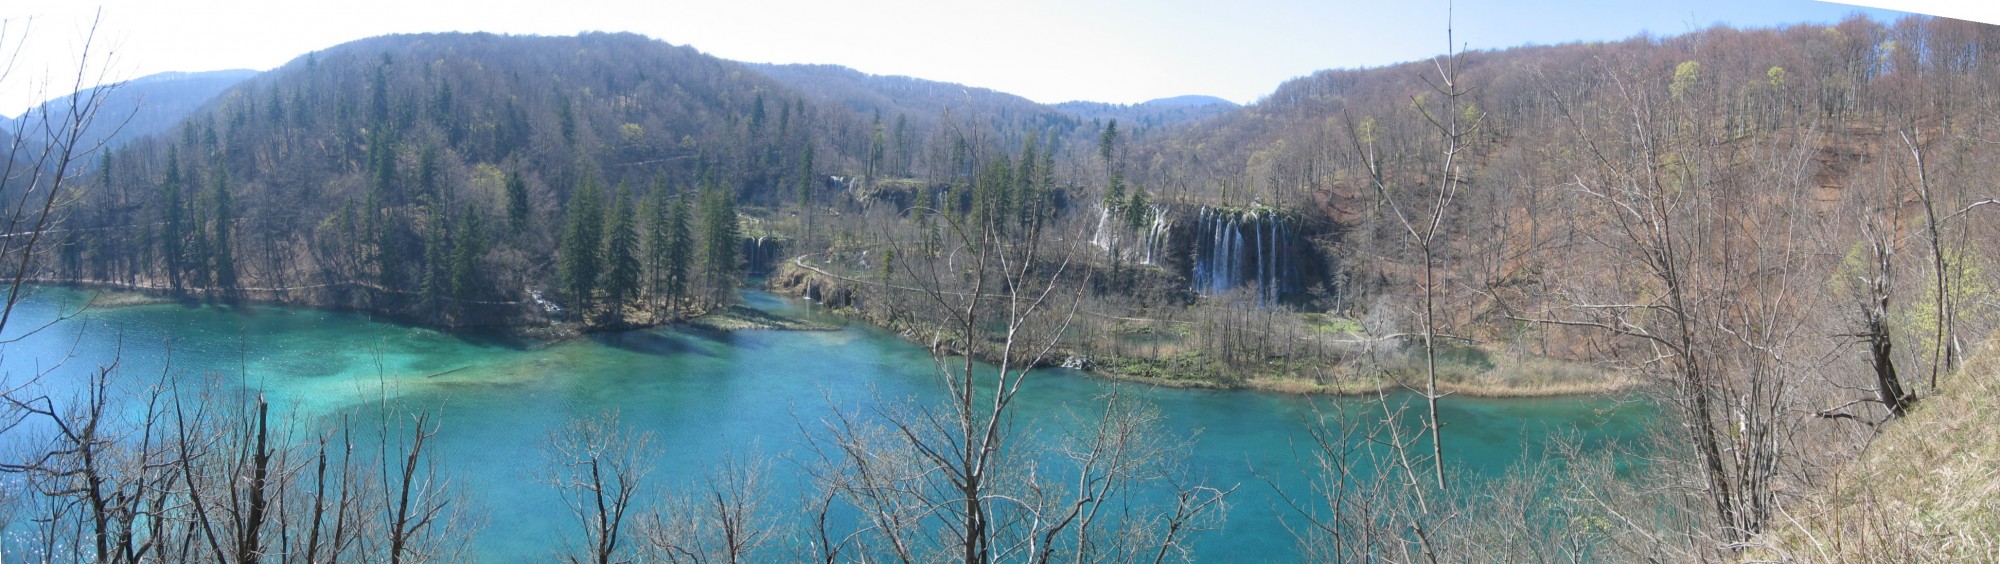 Plitvice Lakes, Gradinsko jezero and Galovacki buk